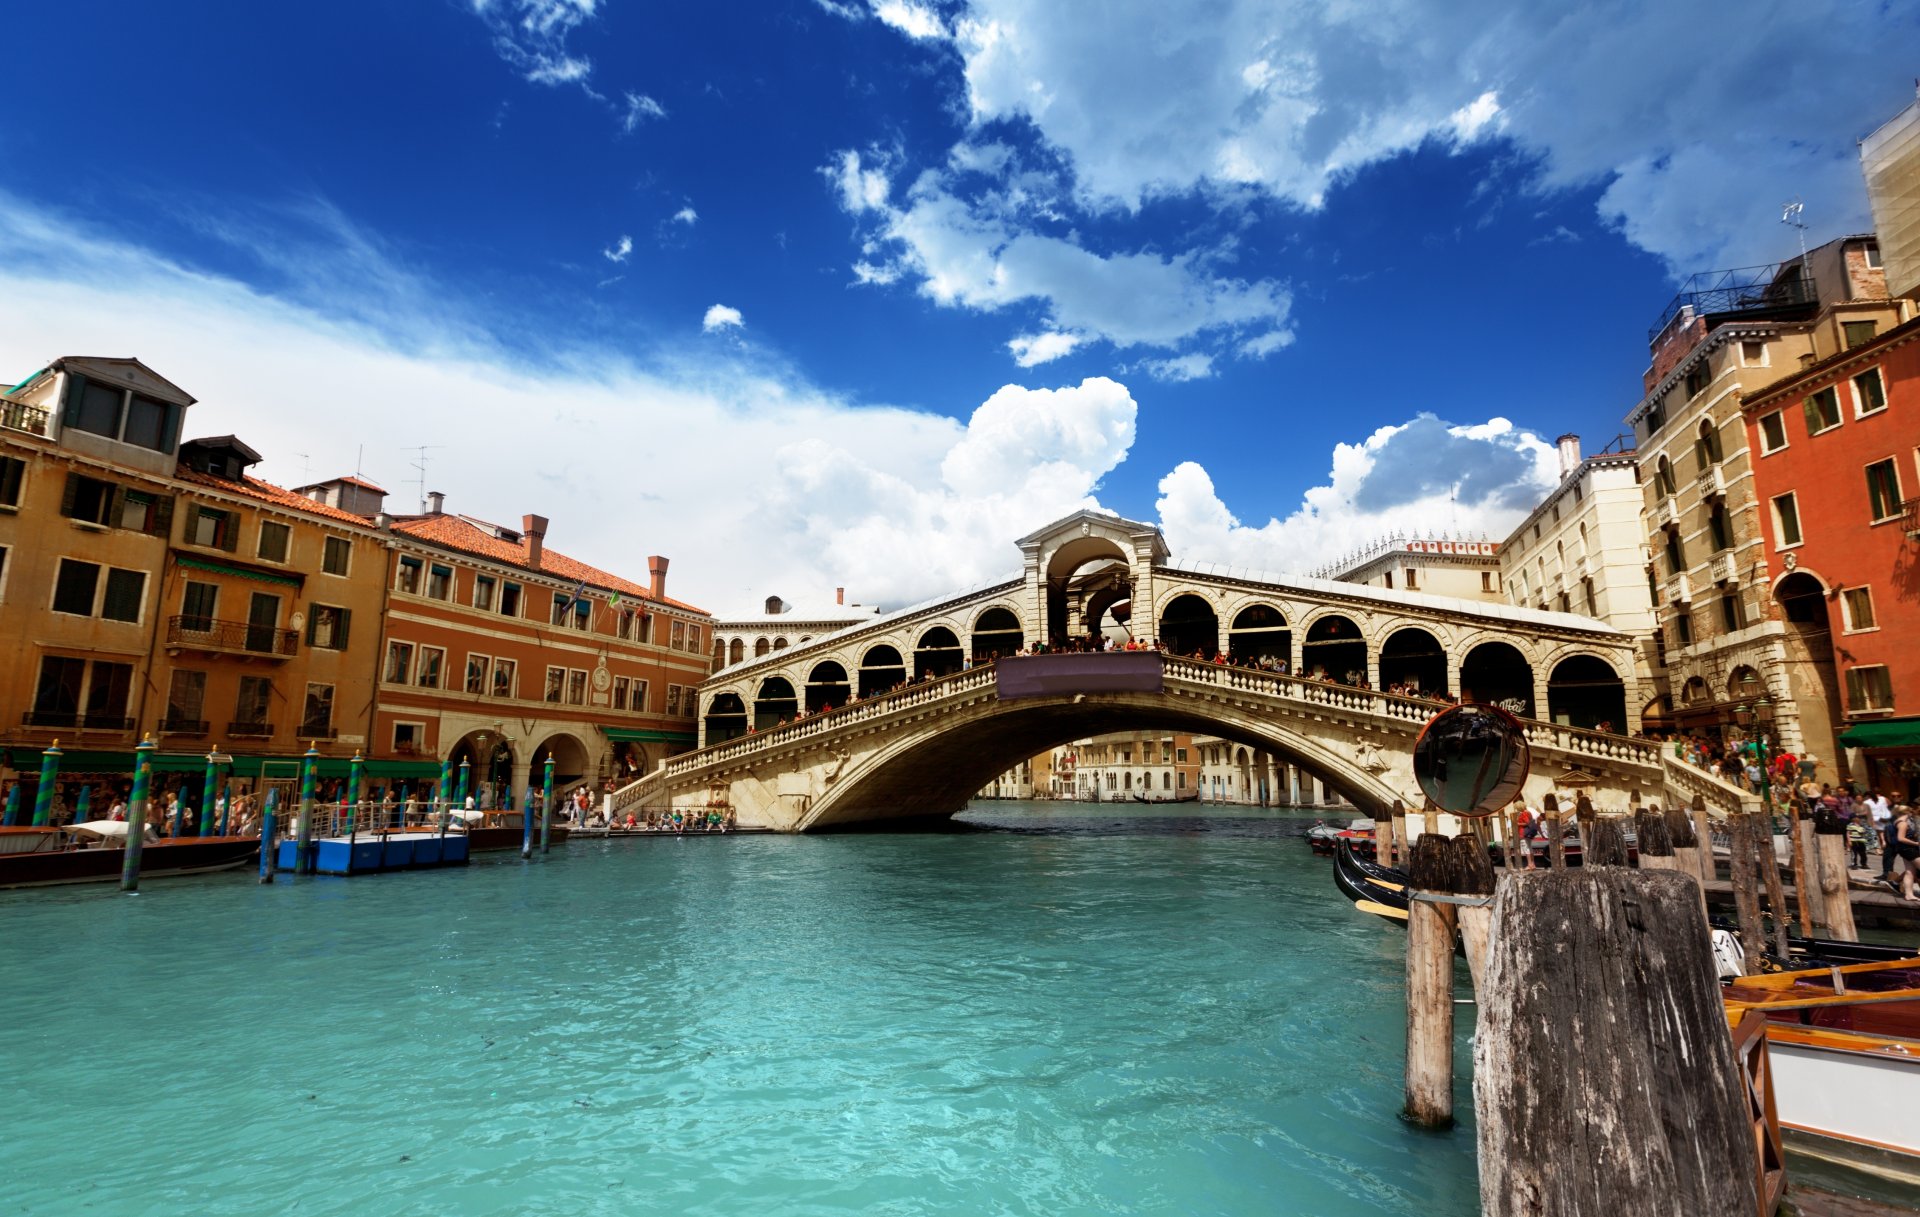 венеция италия понте риальто canal grande мост риальто гранд-канал архитектура небо облака вода гондолы люди дома